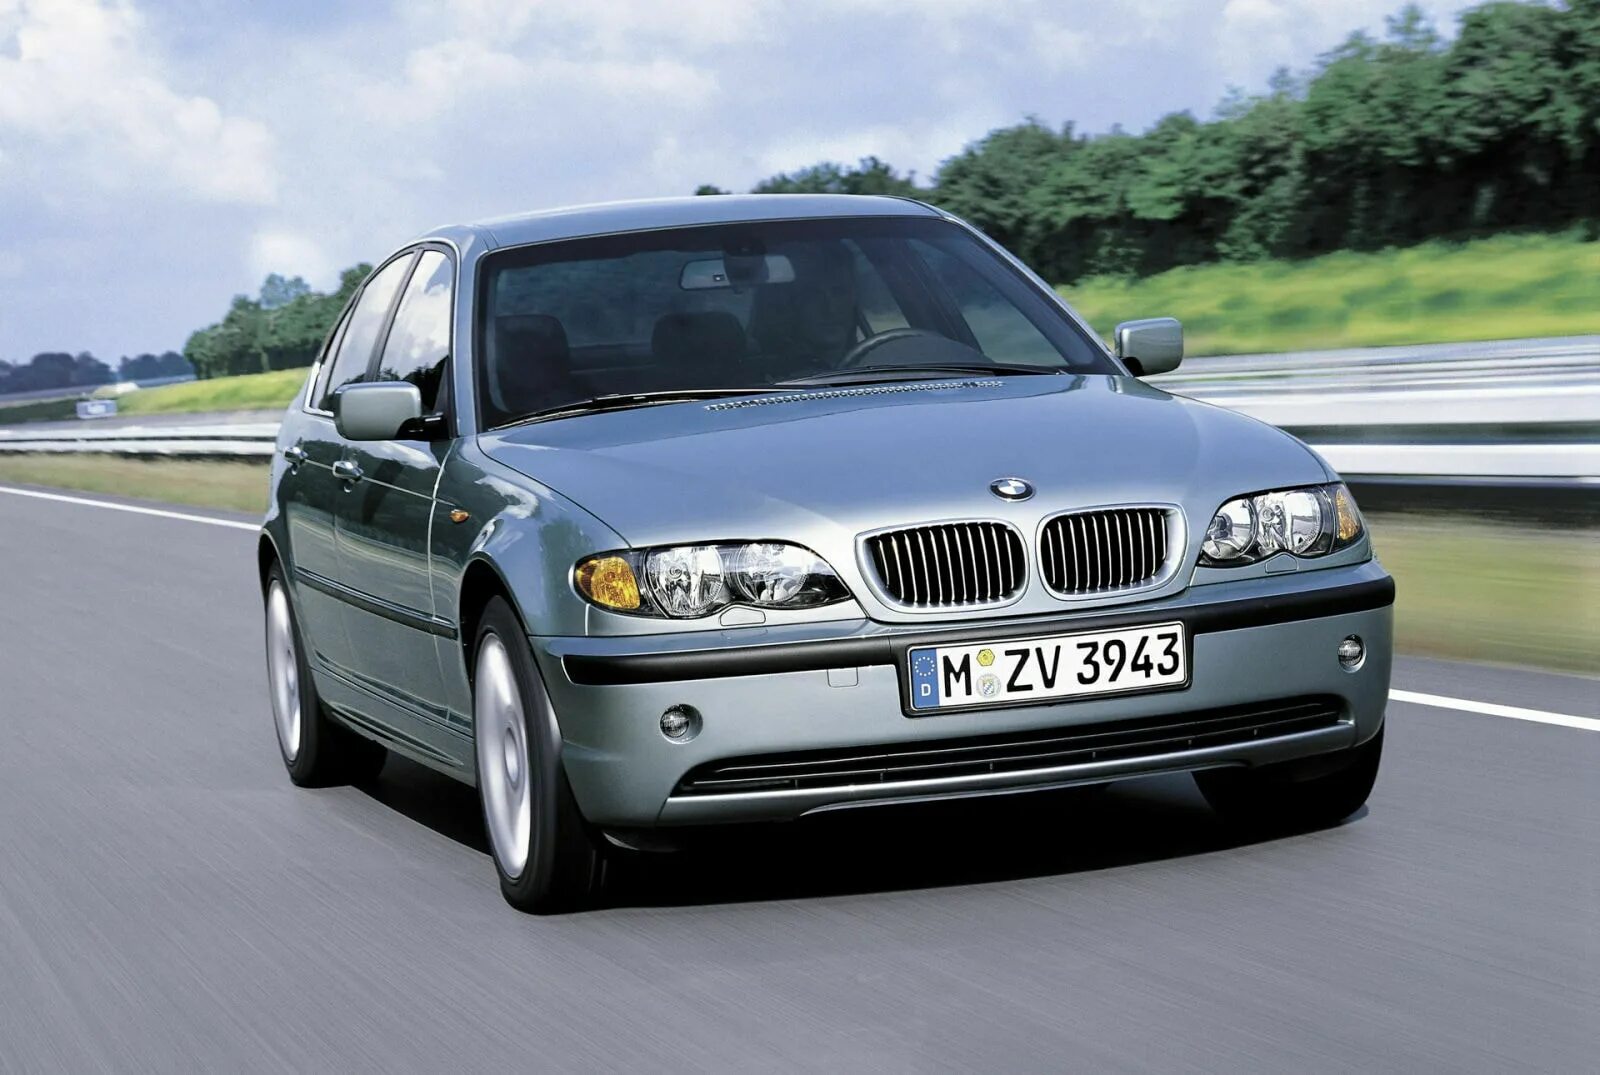 Е46 2002. BMW 325i 2001. BMW e46 2002. BMW 325e sedan. BMW 316i e46.